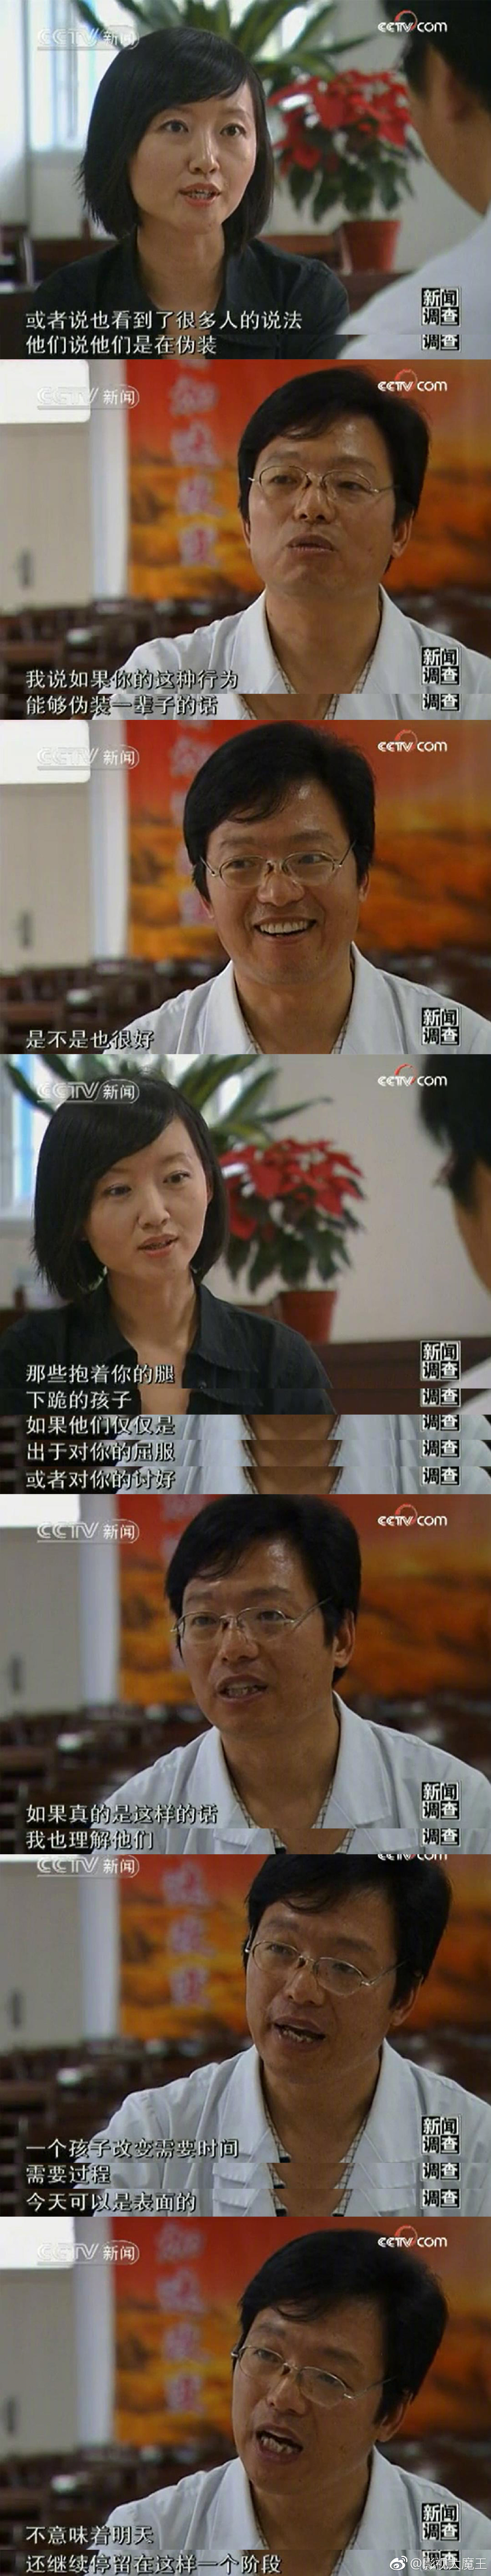 强烈推荐大家去B站看看柴静对杨永信的采访《网瘾之戒》